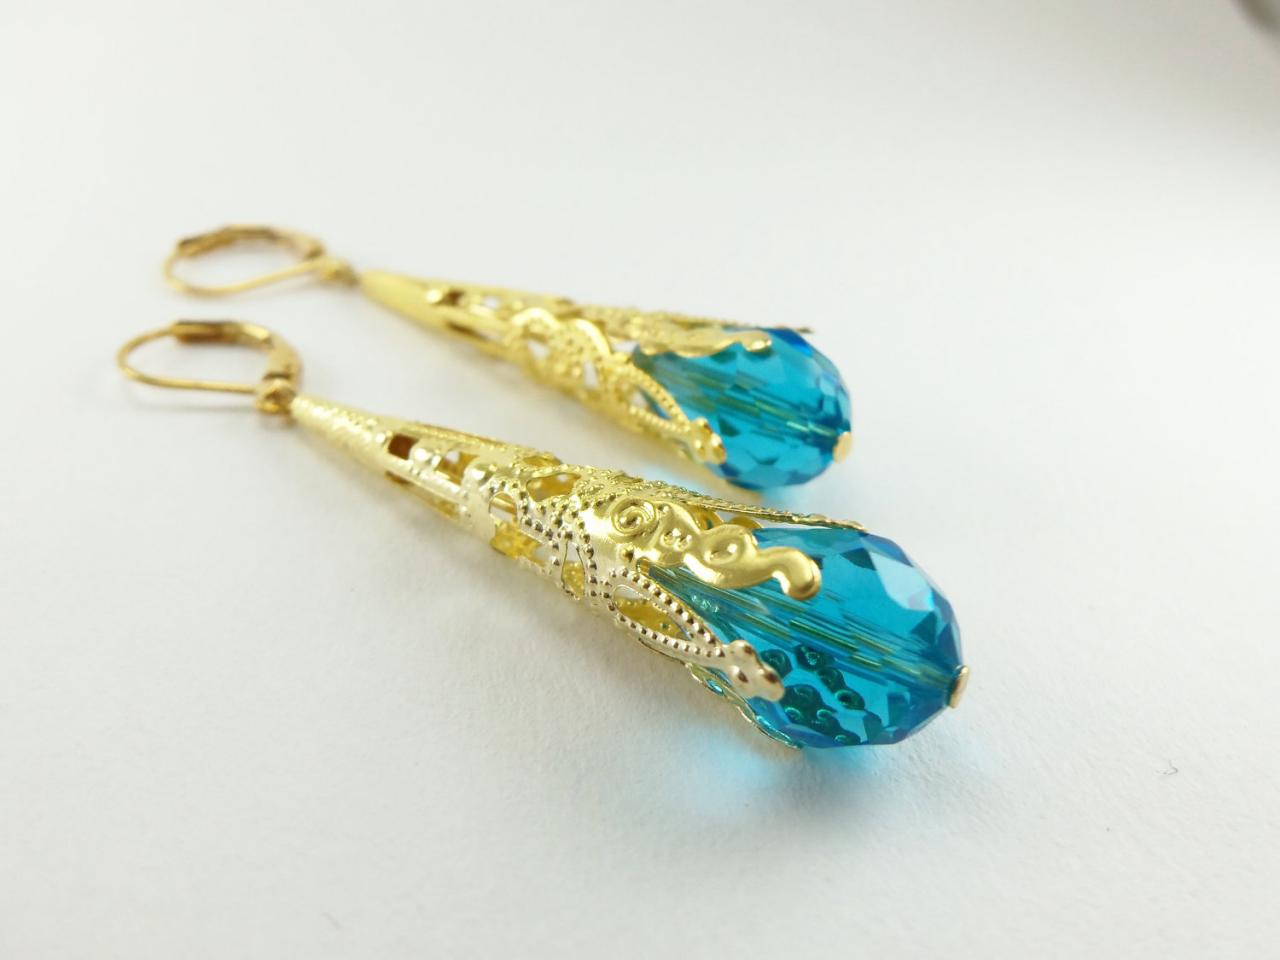 Aqua Earrings Leverback Gold Dangle Earrings Victorian Jewelry Filigree Earrings Long Dangle